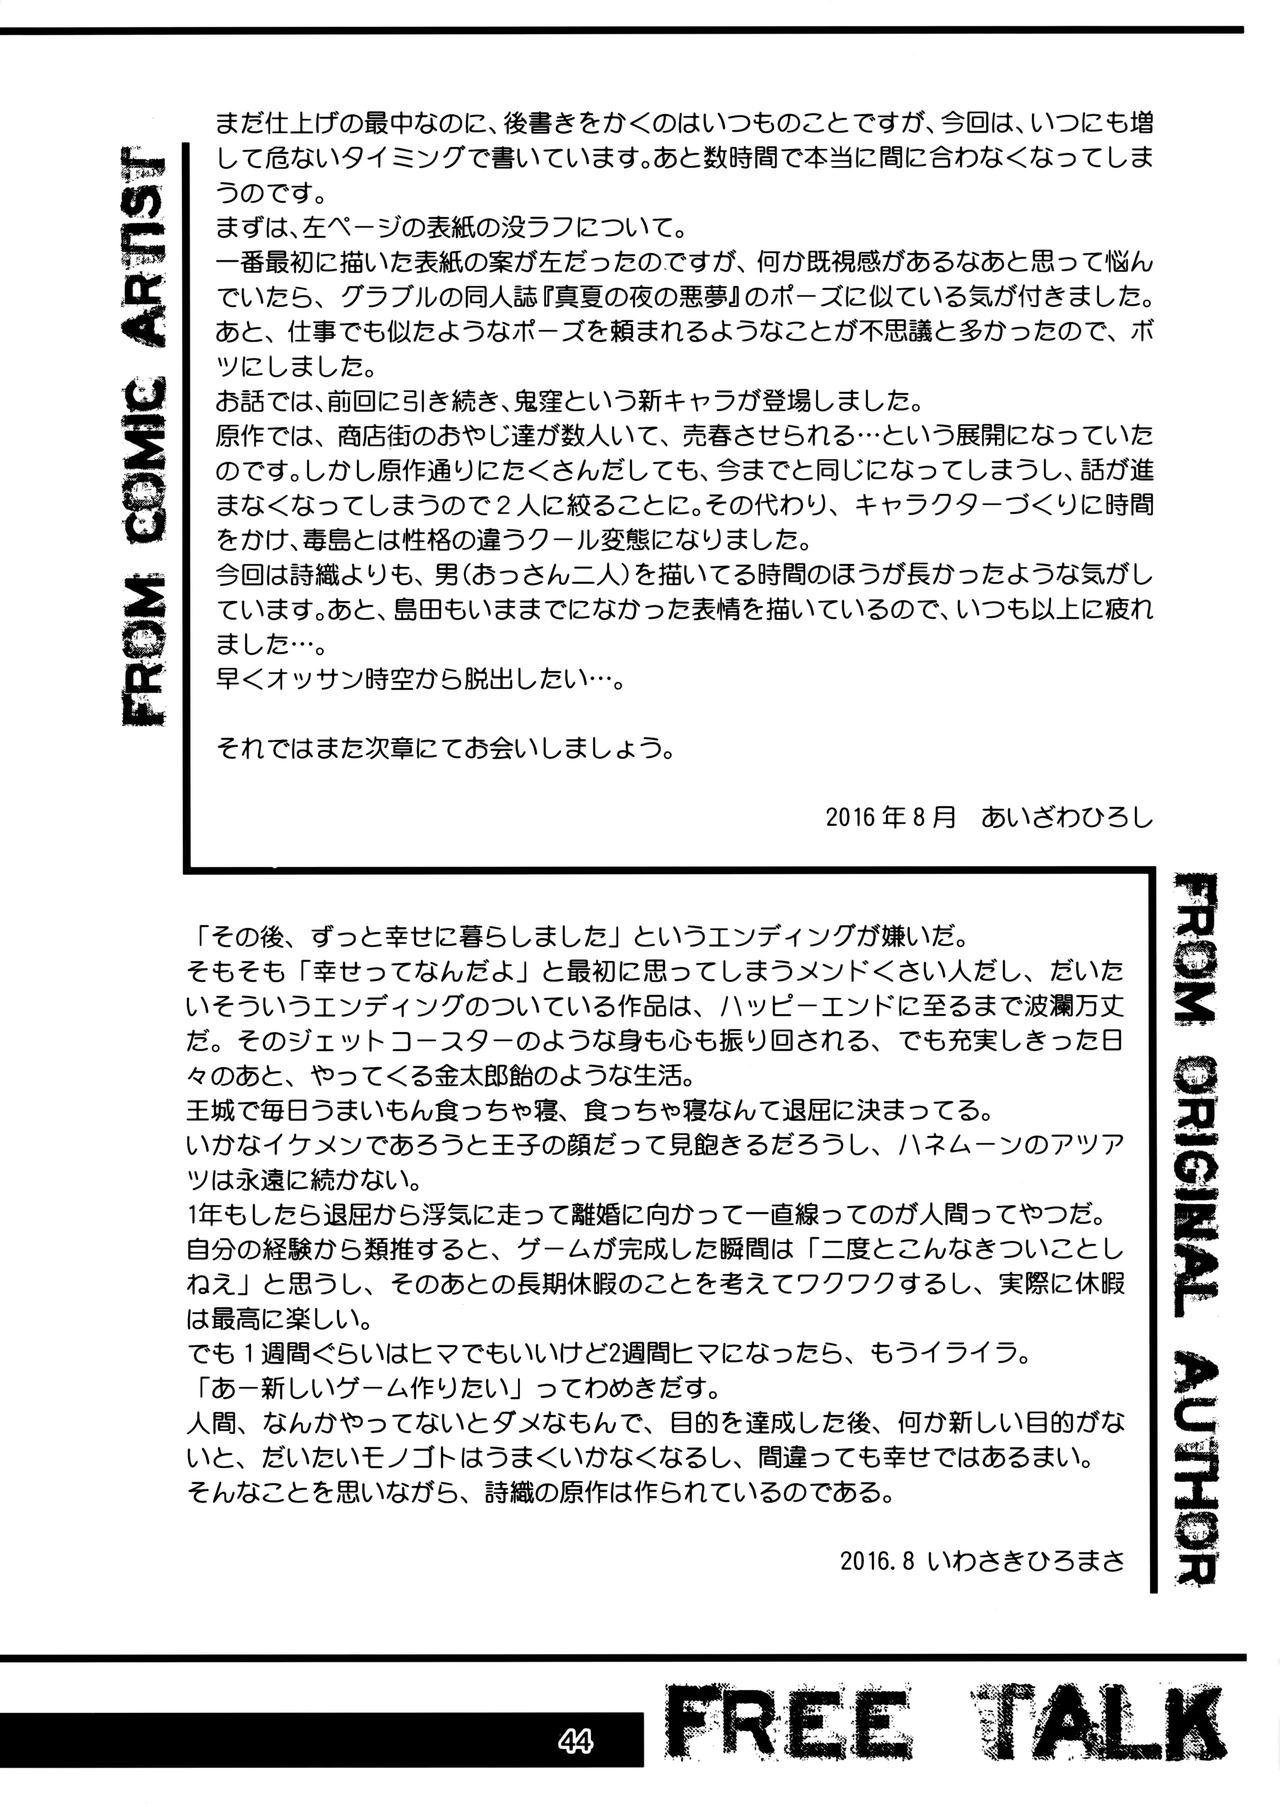 (C90) [HIGH RISK REVOLUTION (Aizawa Hiroshi)] Shiori Dai-Nijuusan-Shou Injuu no Shanikusai - Shiori Volume 23 Carnival For Lusty Beasts (Tokimeki Memorial) 42